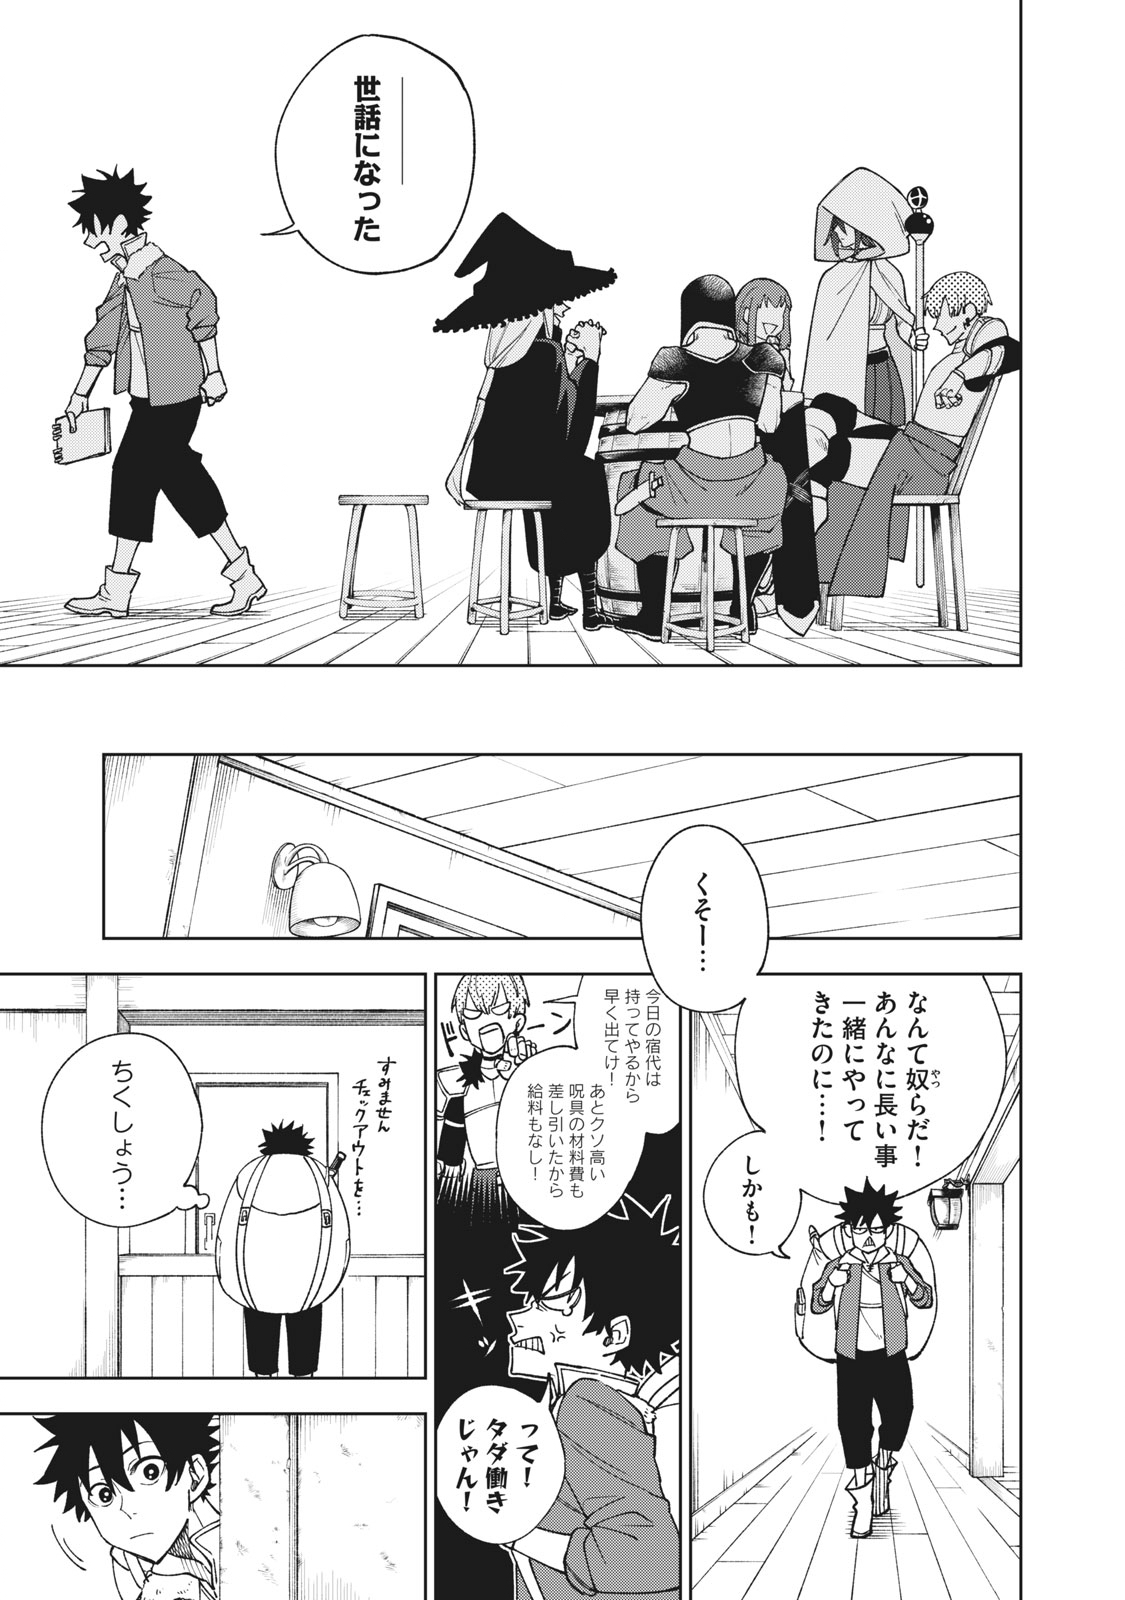 S-Rank Party Kara Kaikosareta Jugushi - Noroi no Item Shika  Tsukuremasen ga, Sono Seinou wa Artifact-kyuu nari! - Baka-Updates  Manga